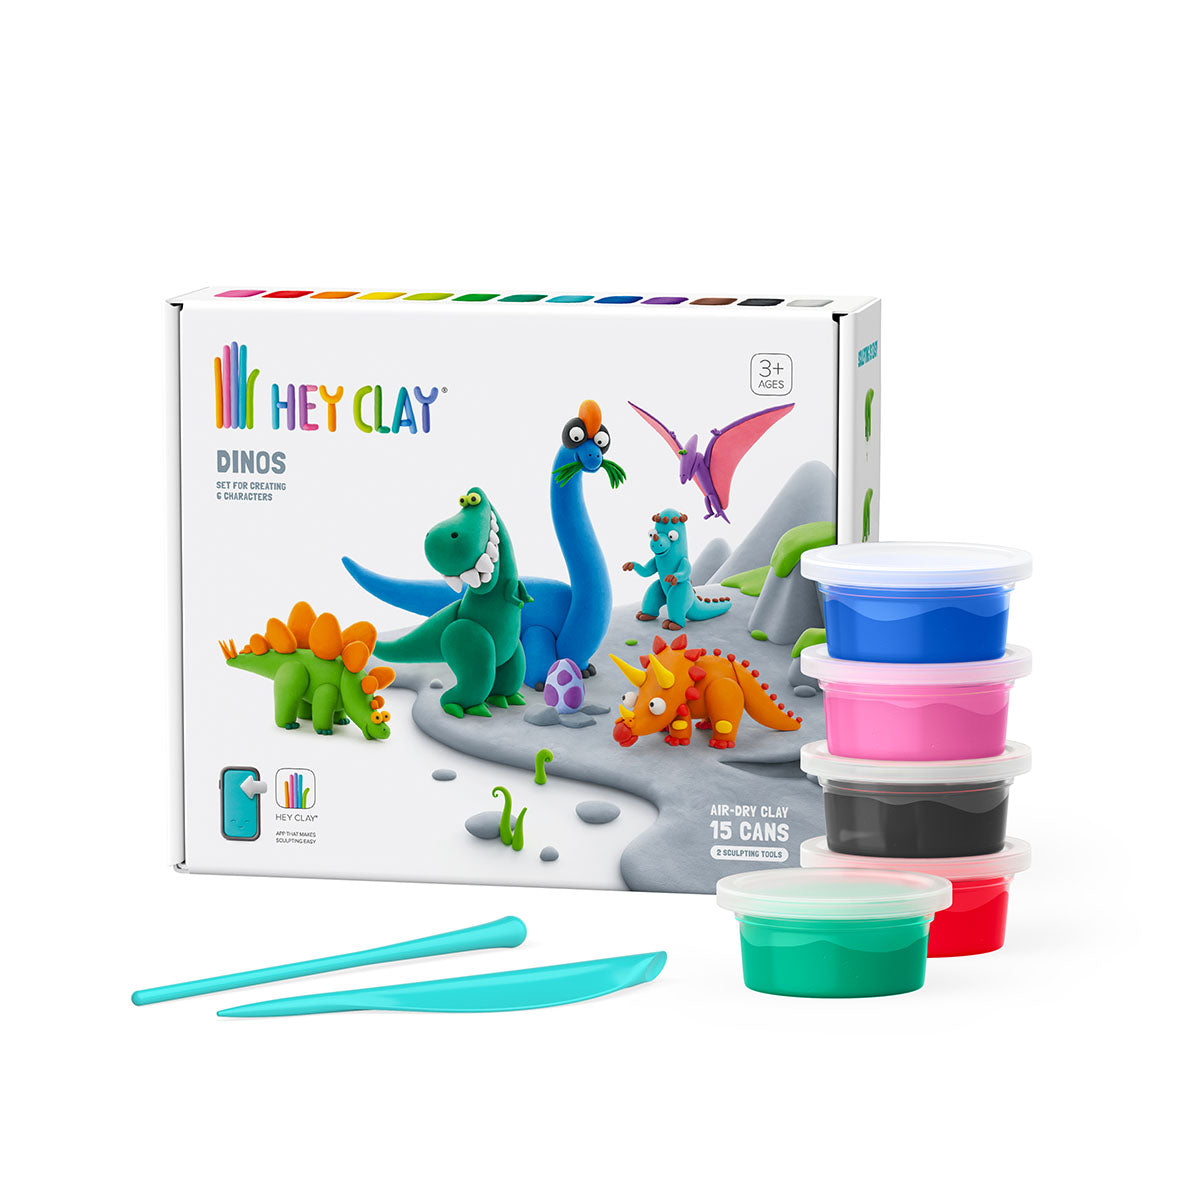 Boetseer vrolijk uitziende gekleurde figuurtjes met de boetseerklei én bijbehorende app van HeyClay in de variant Dinos. 15 stuks klei, plakt niet en droogt snel. Voor creatieve en leergierige kinderen. VanZus